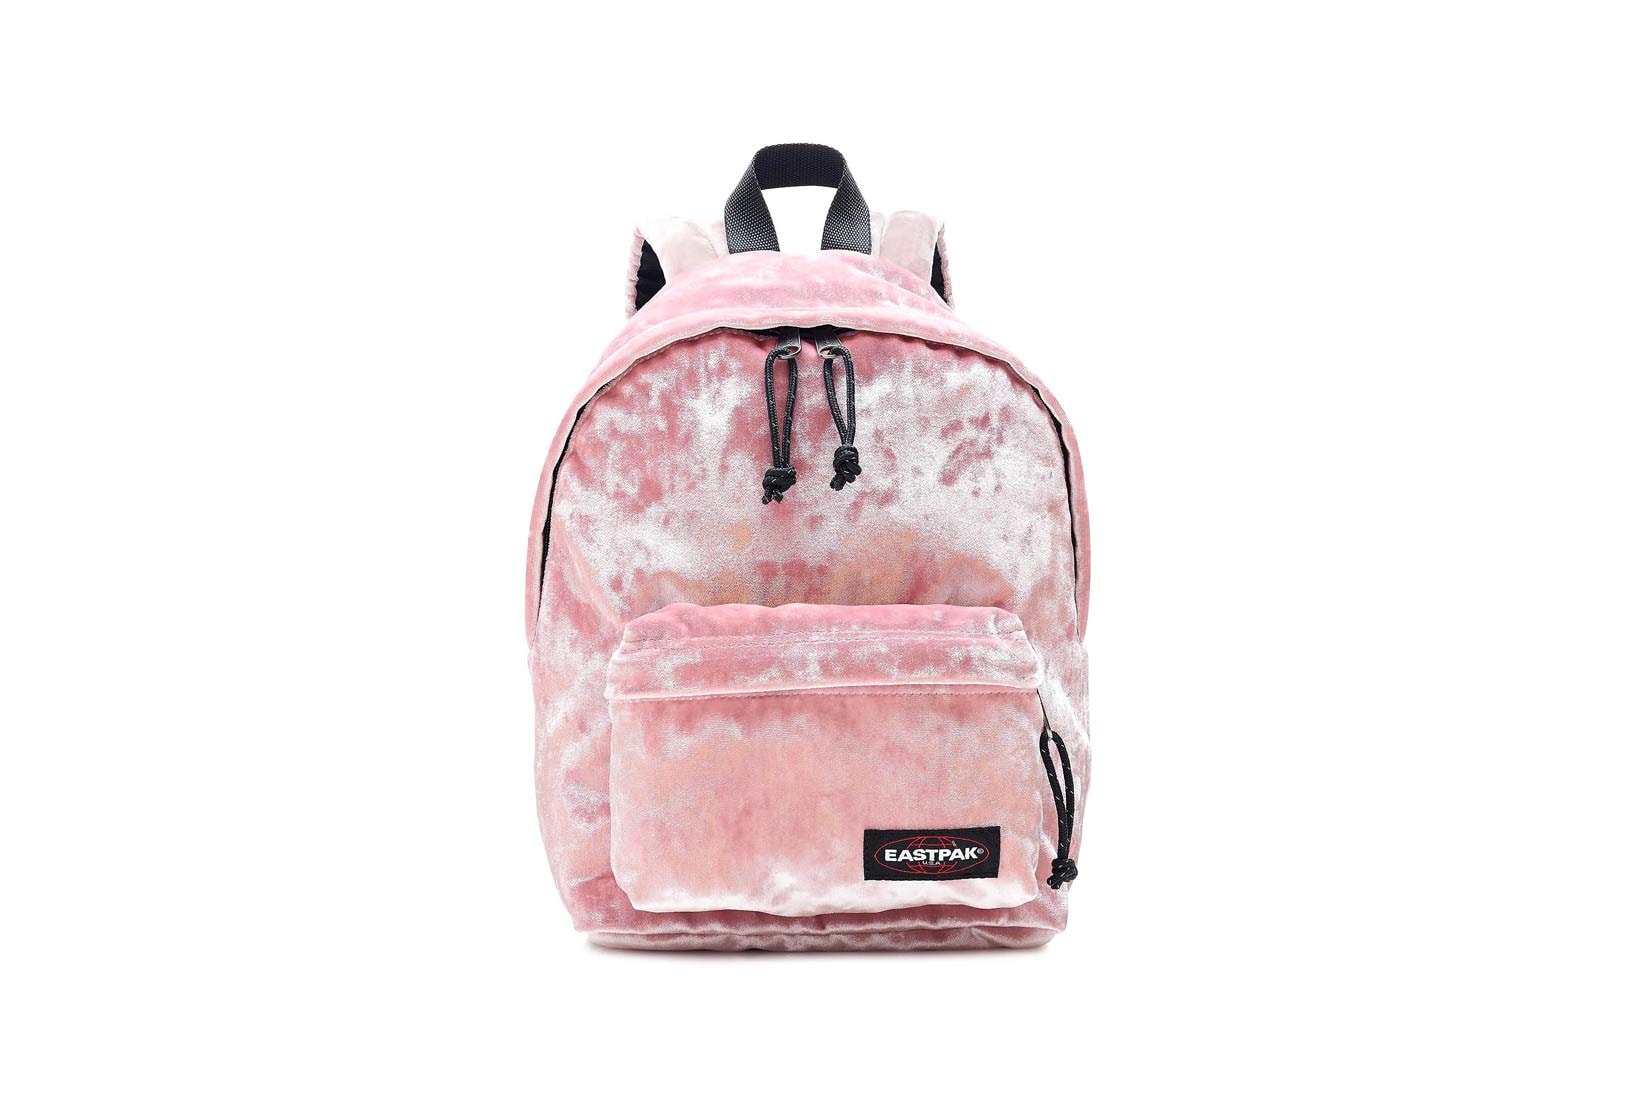 J.Crew Eastpak Pink Velvet Backpack